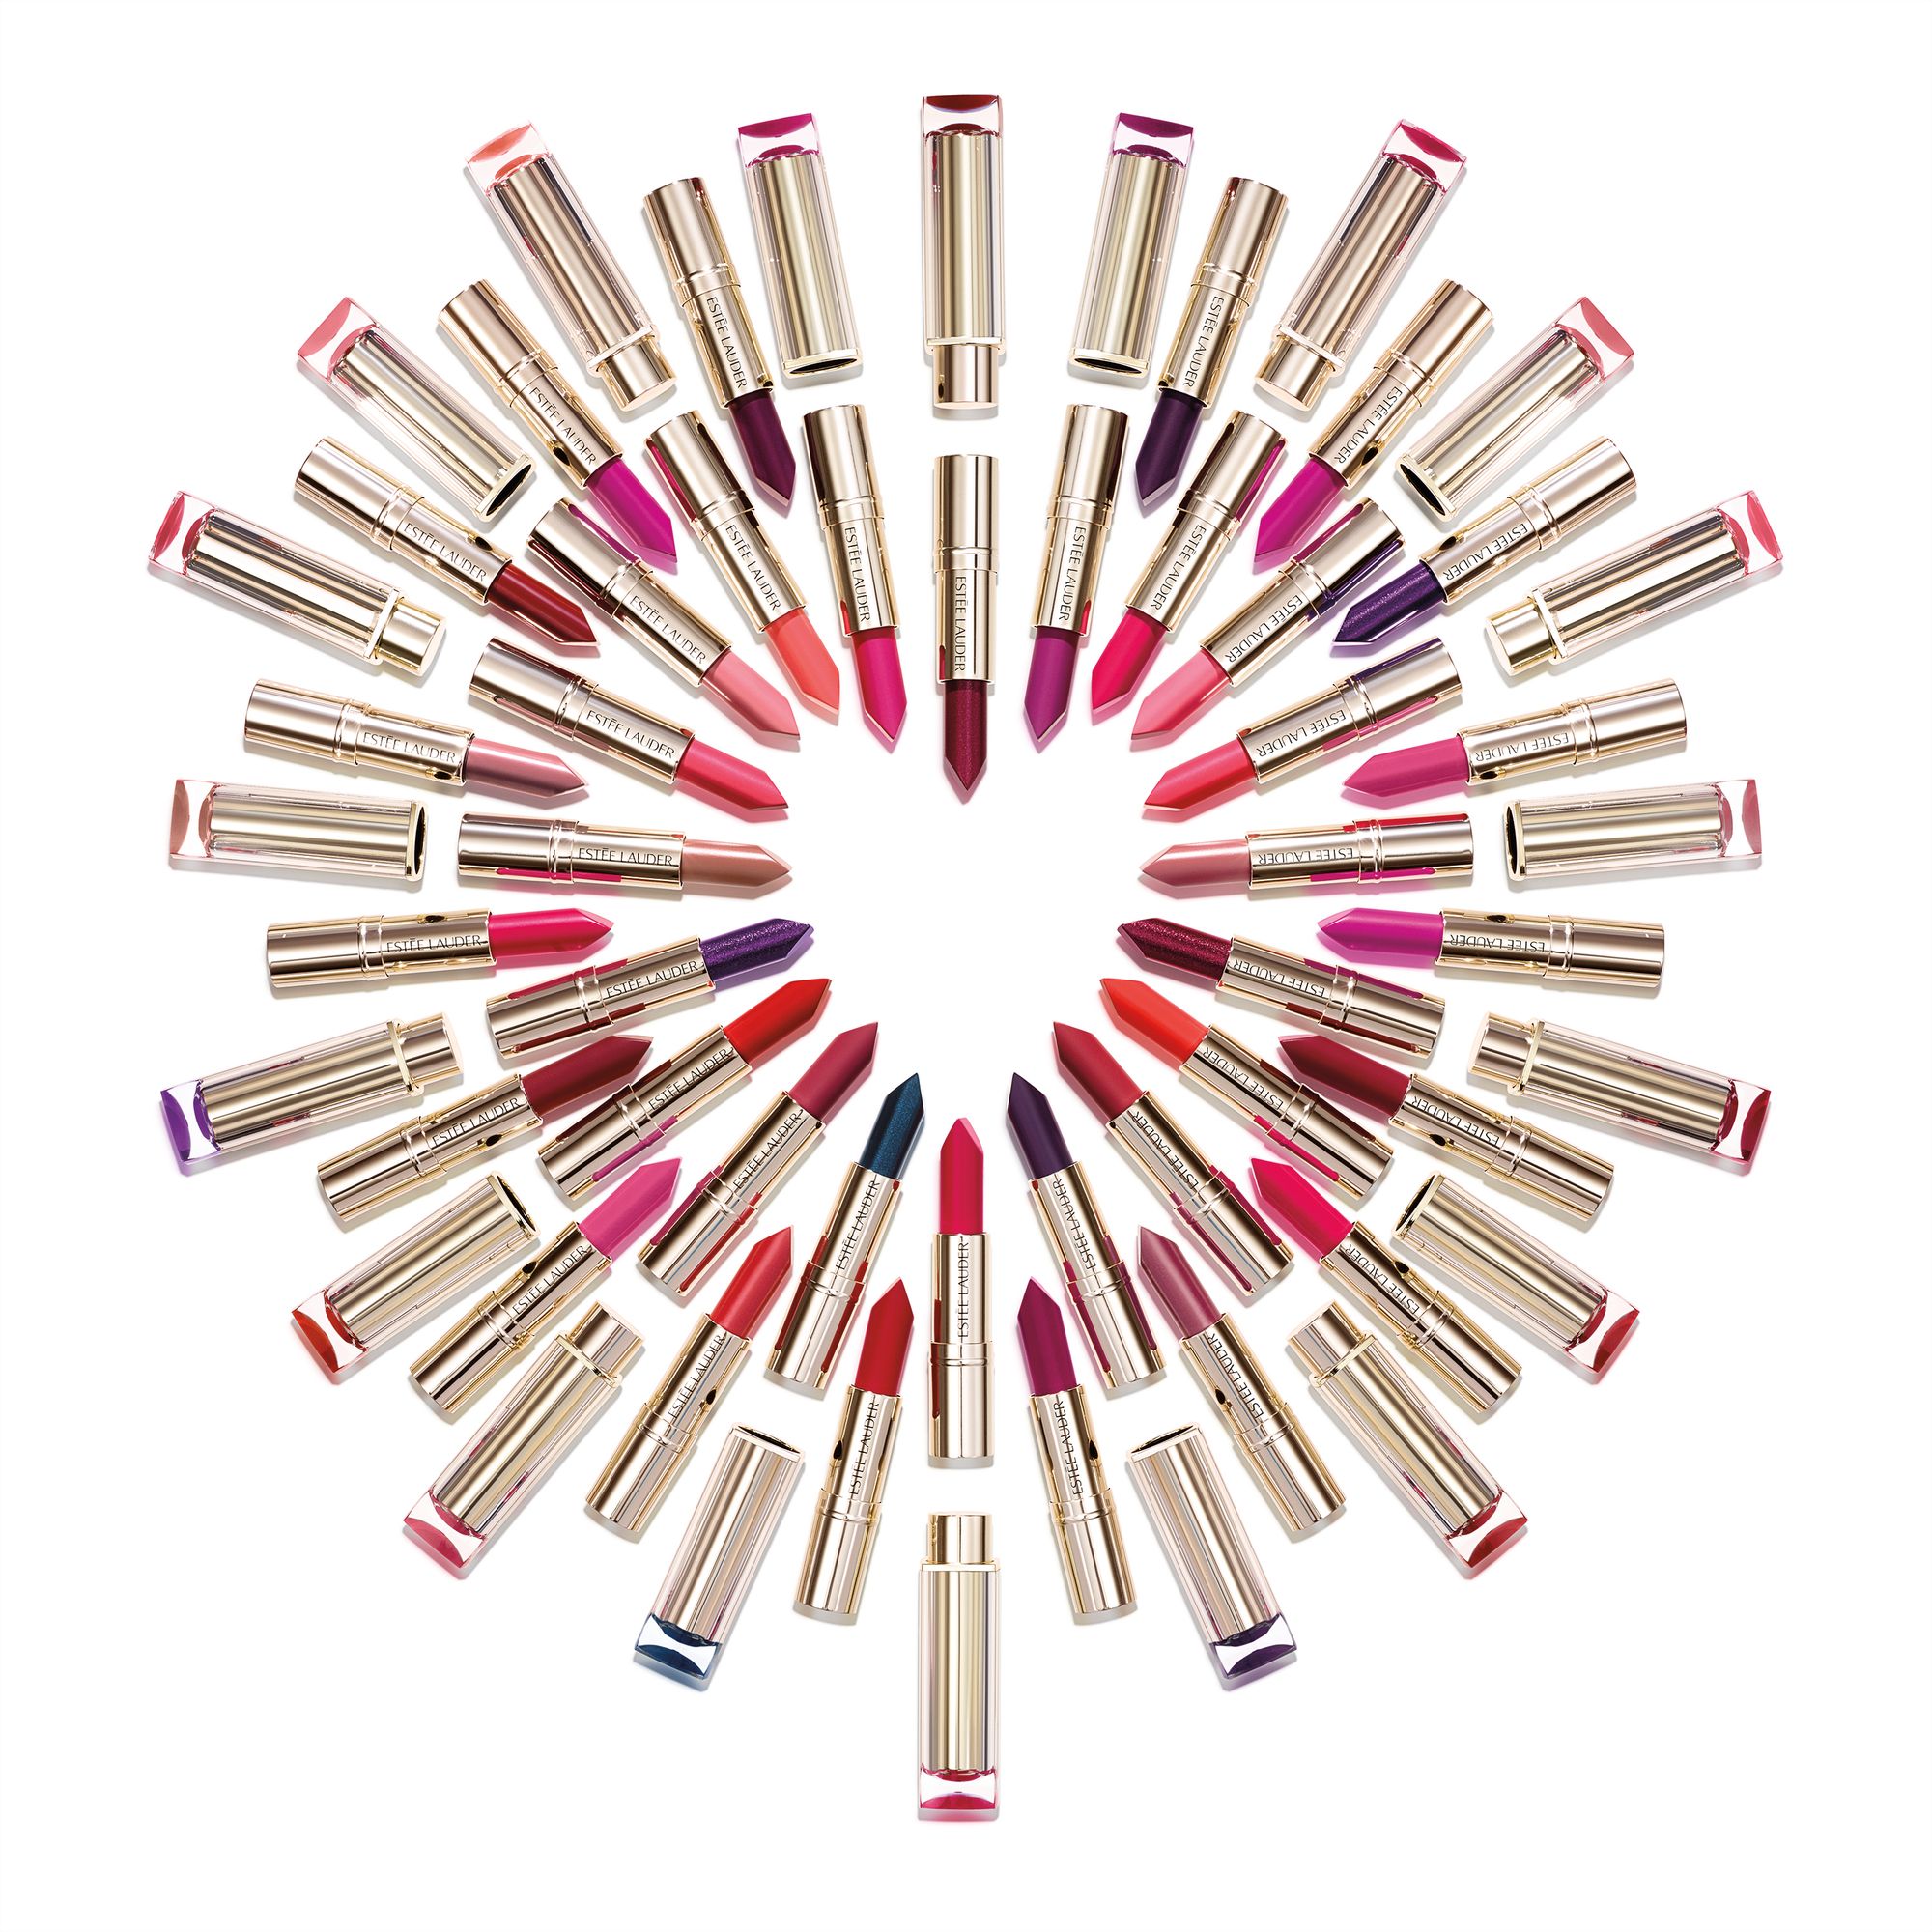 Estée Lauder's Pure Color Love lipstick